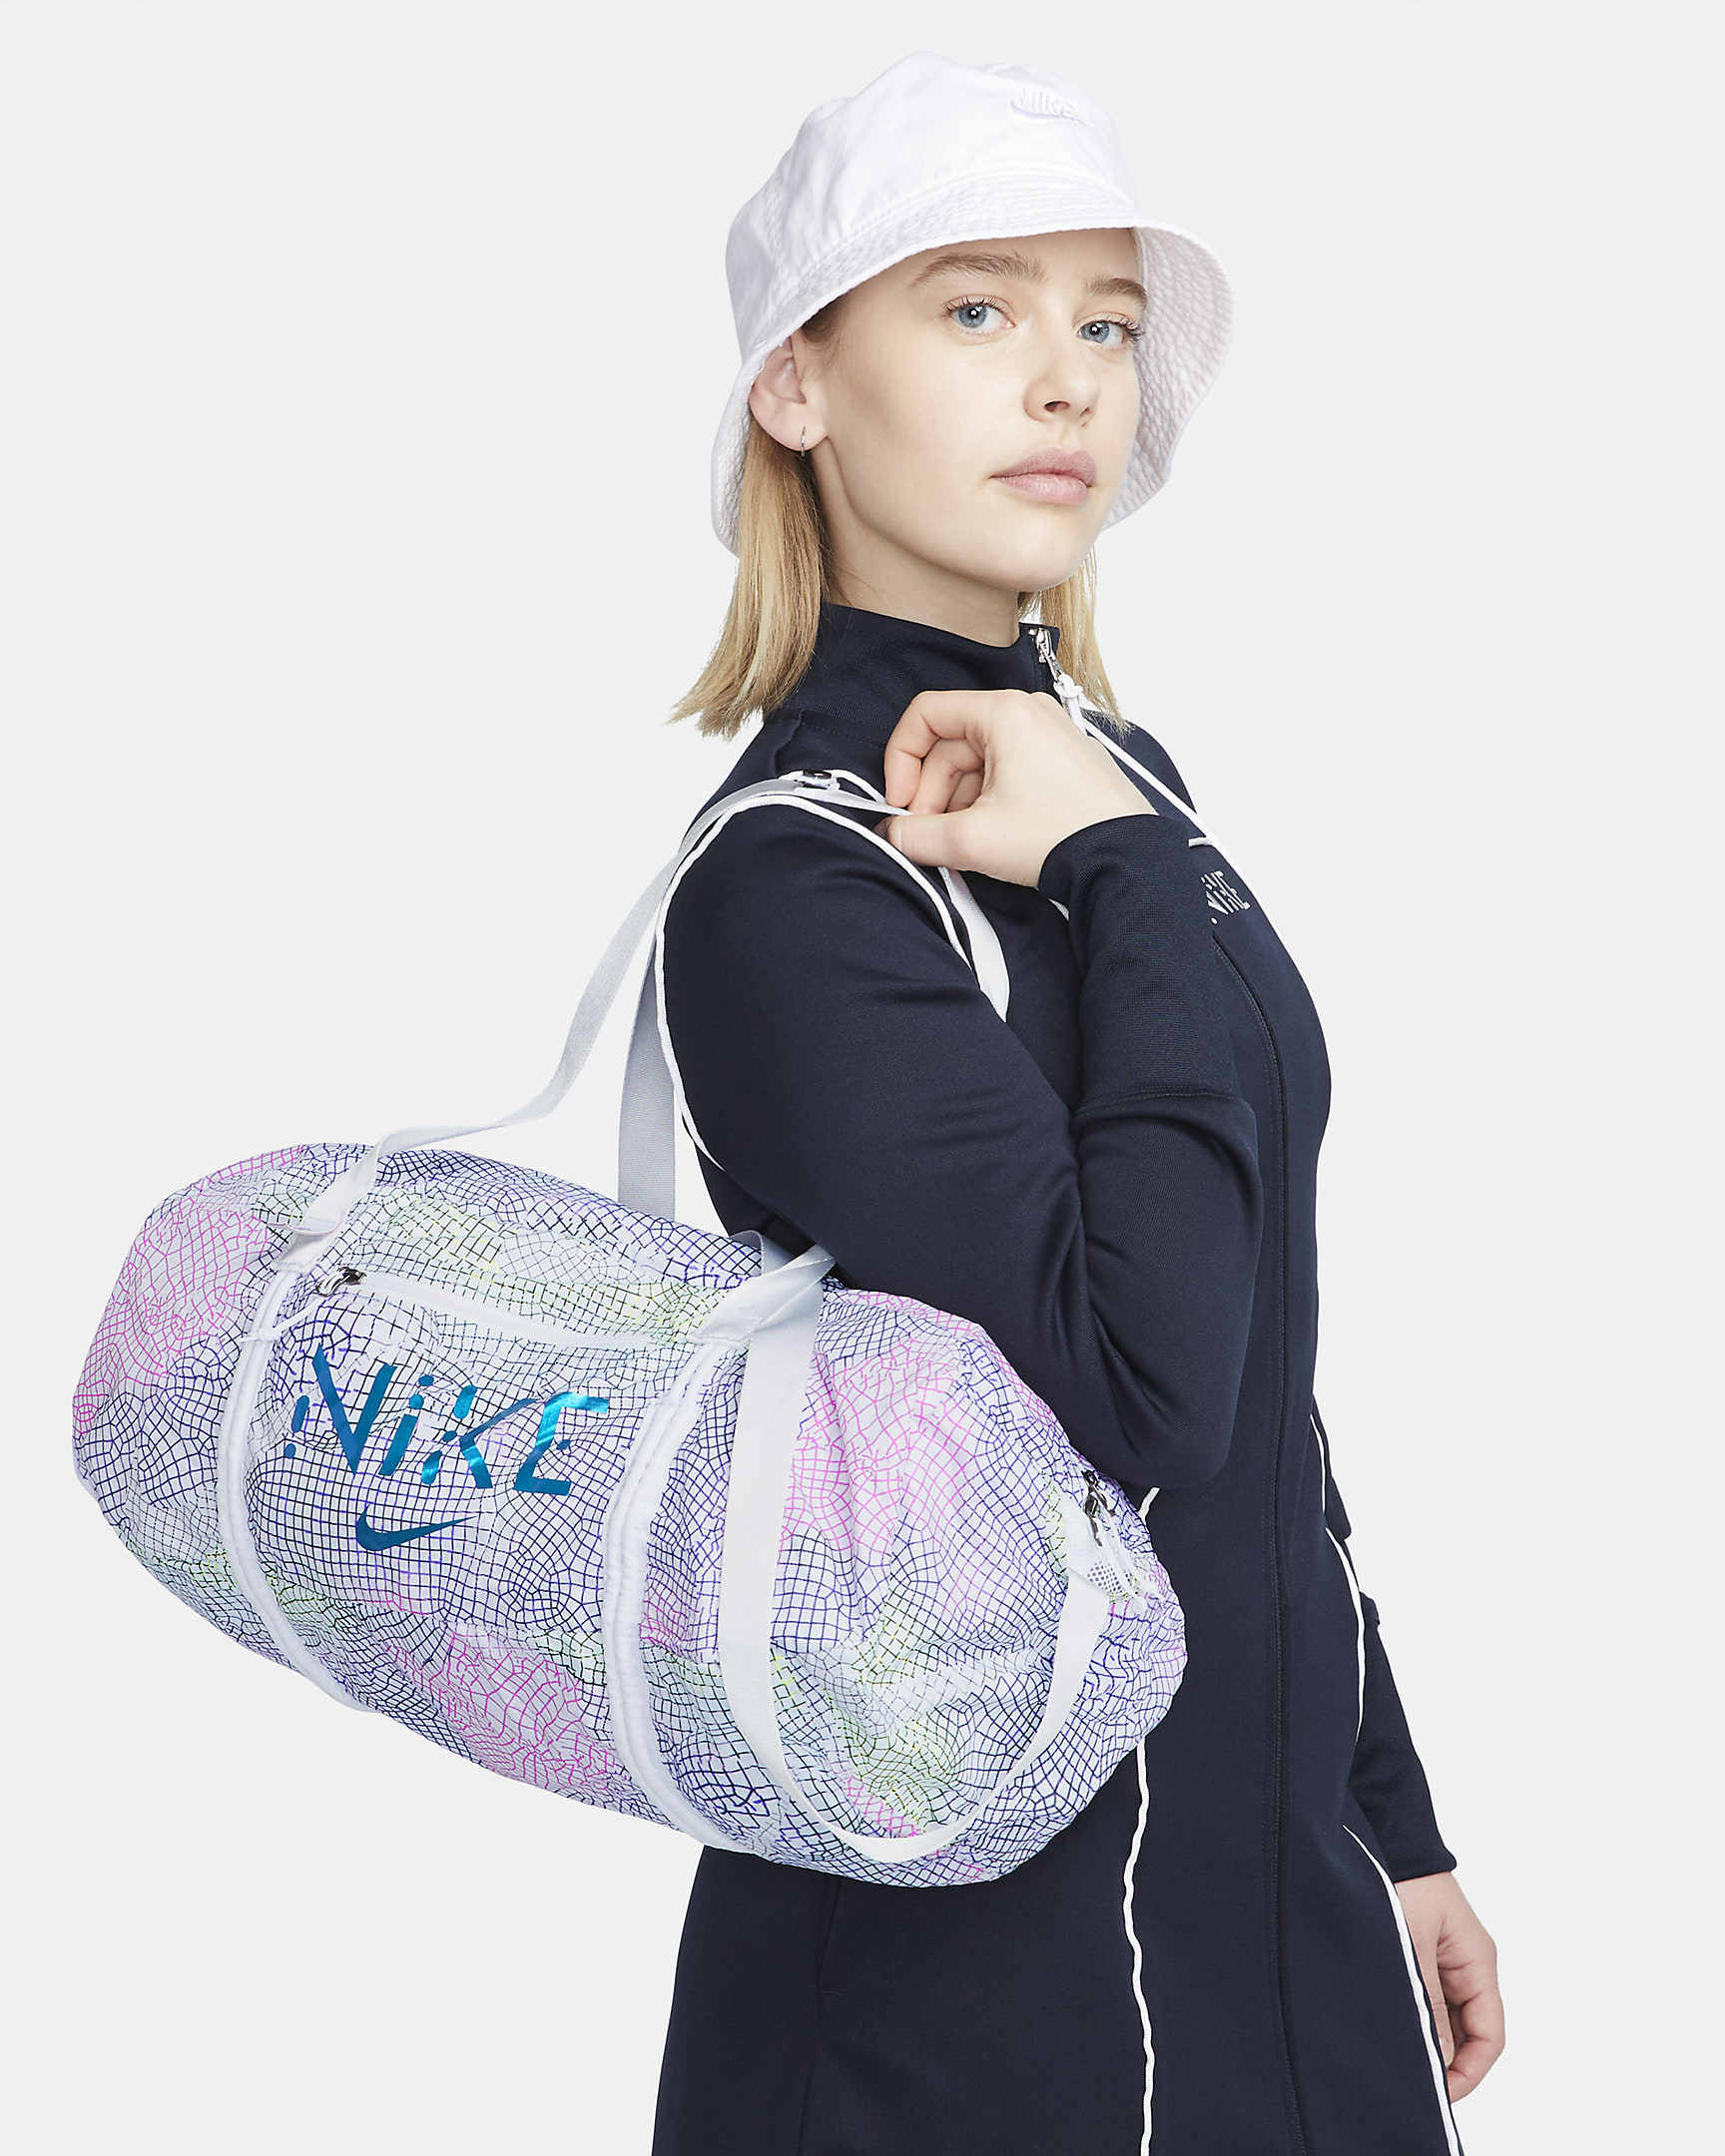 Serena Williams Design Crew Stash Duffel Bag (21L). Nike SG